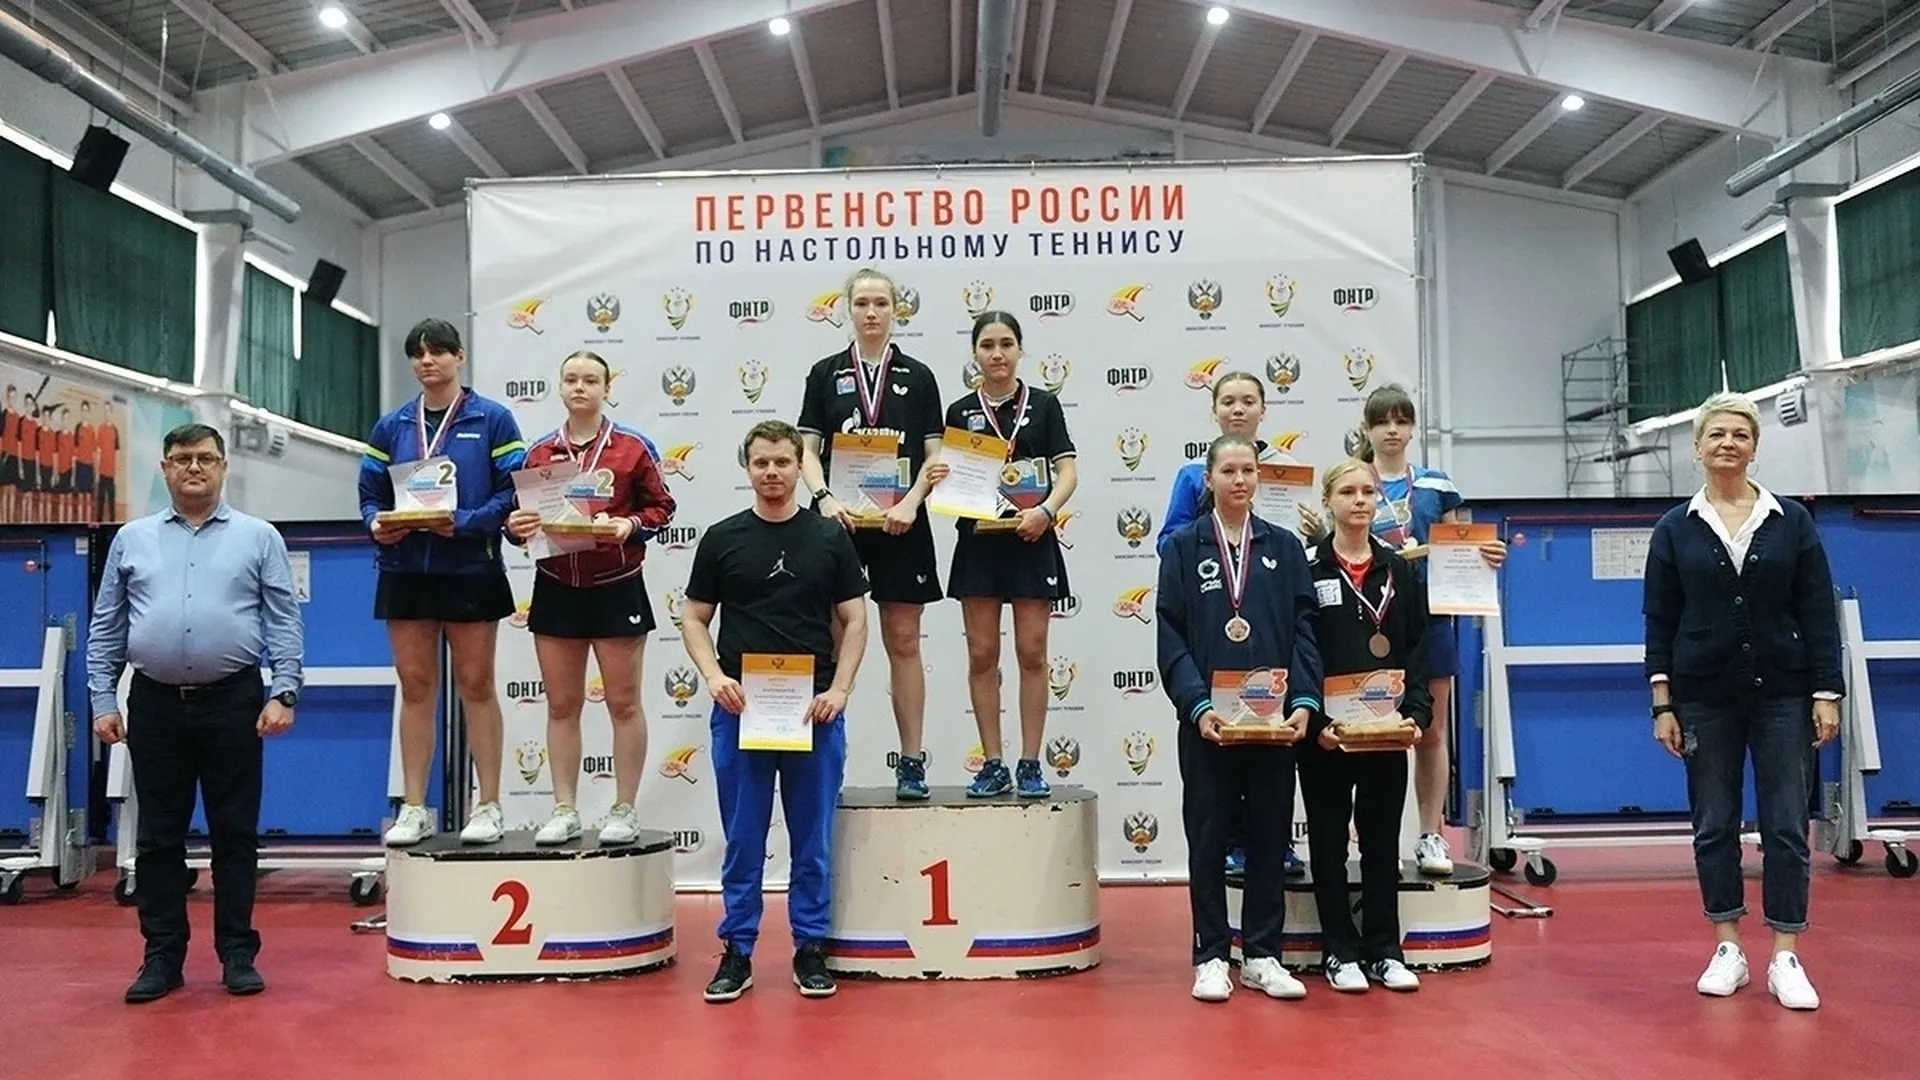 Сборная Подмосковья взяла две награды первенства России по настольному теннису